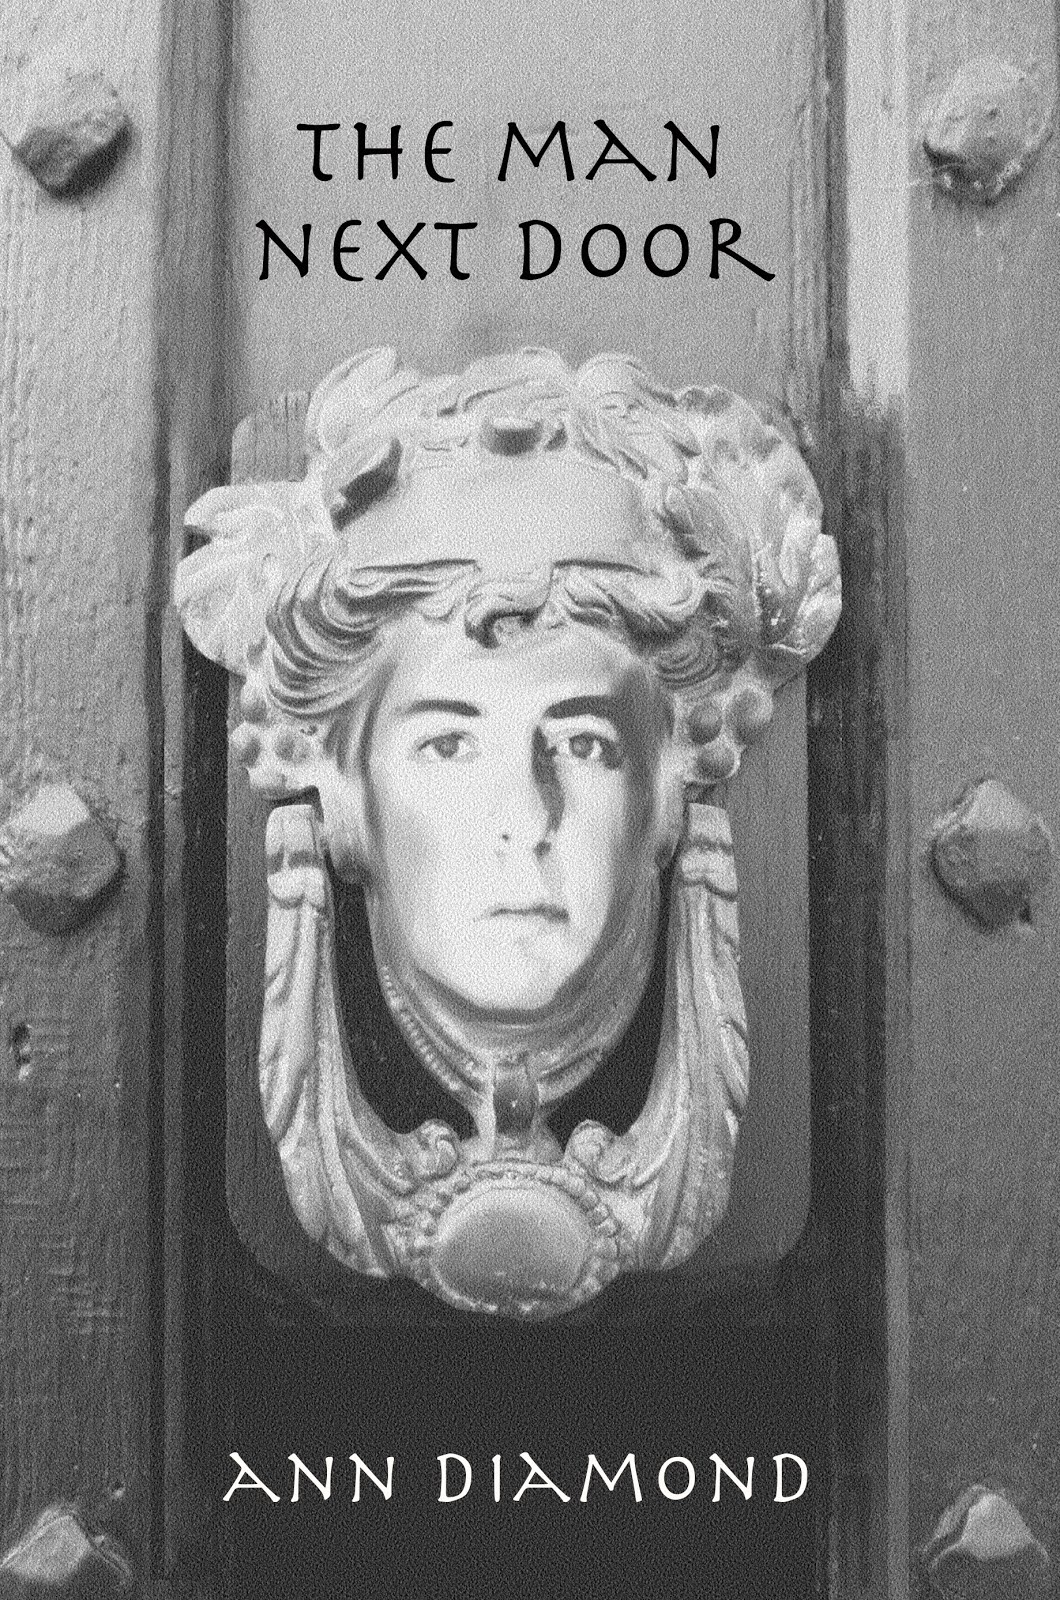 Buy THE MAN NEXT DOOR